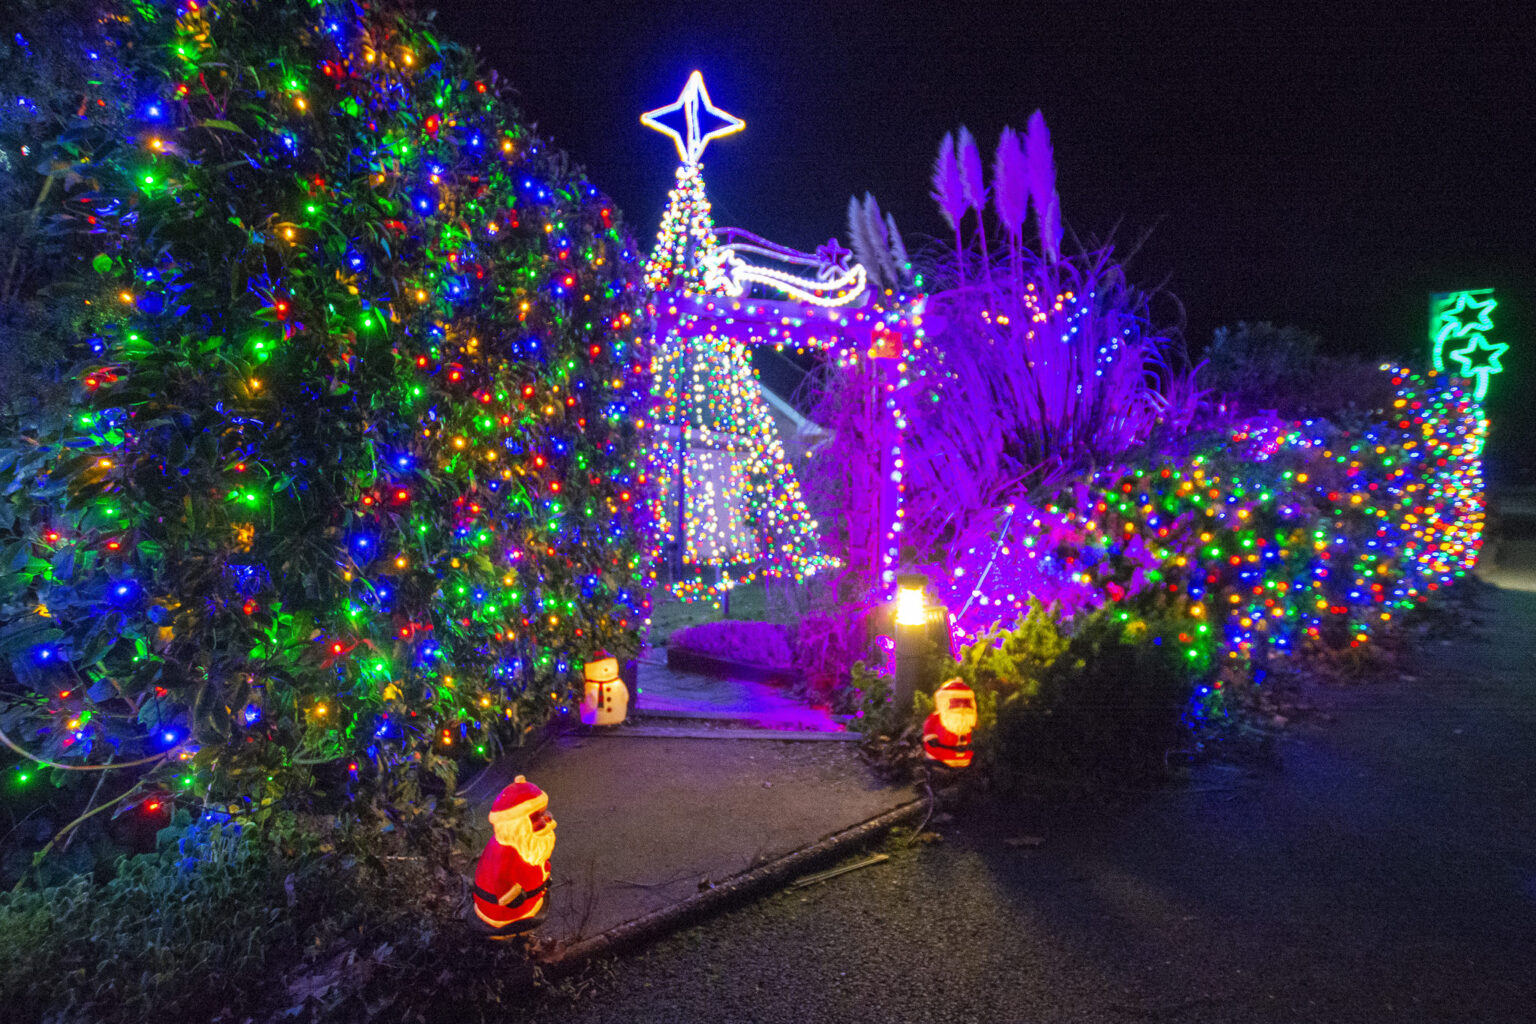 041220 Bannock Road Christmas Lights 2020 2048 08